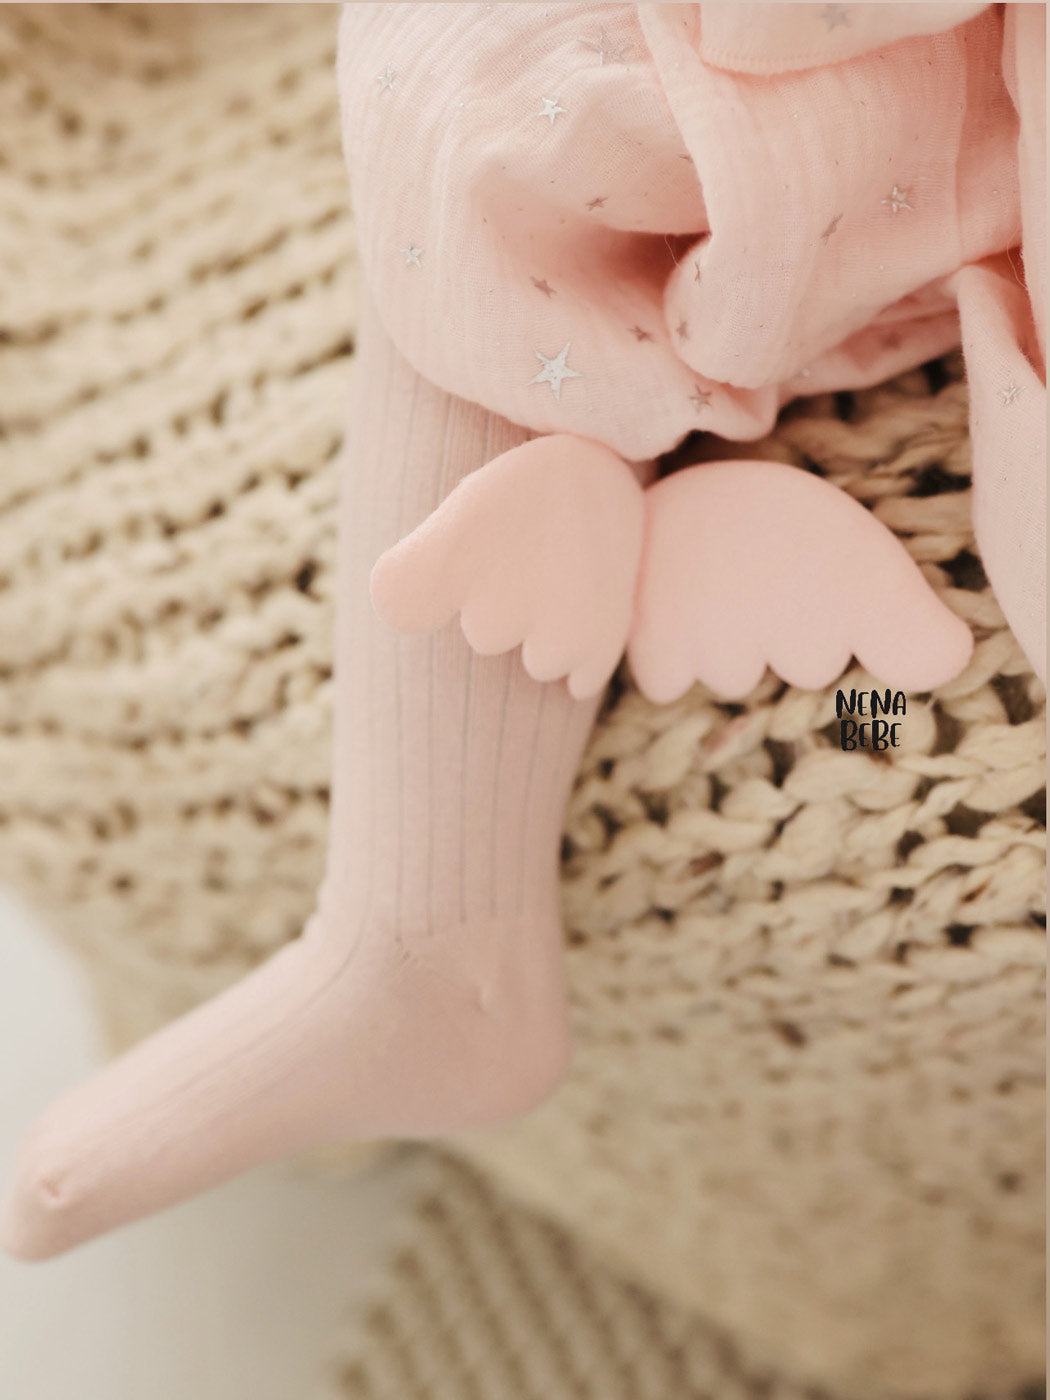 NENA BEBE Knee-high socks with wings-B5008 pink